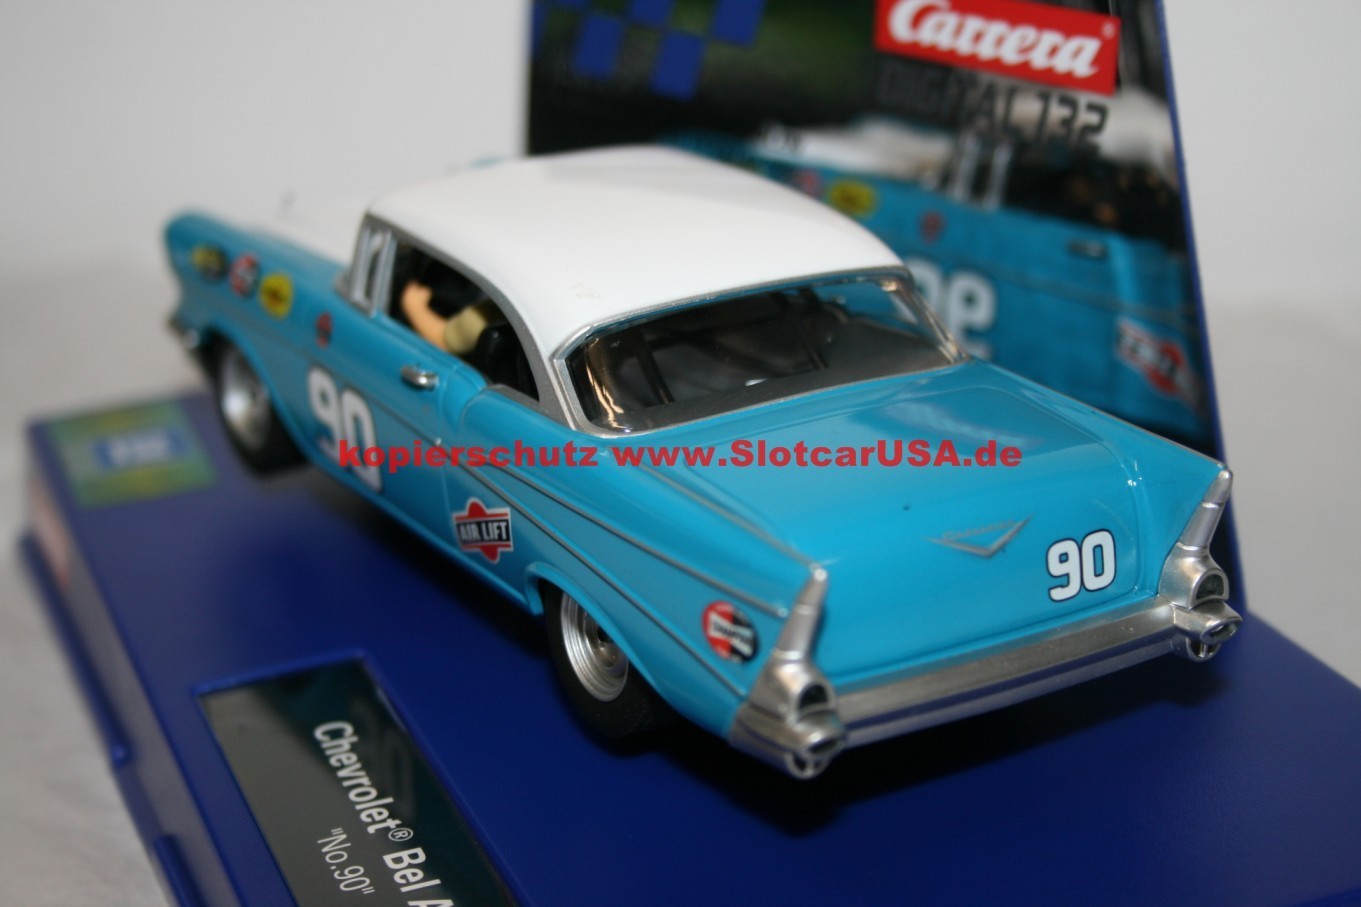 90 Karosse+Chassis FOTOS!! Carrera Digital 132 30795 Chevrolet Bel Air '57 No 